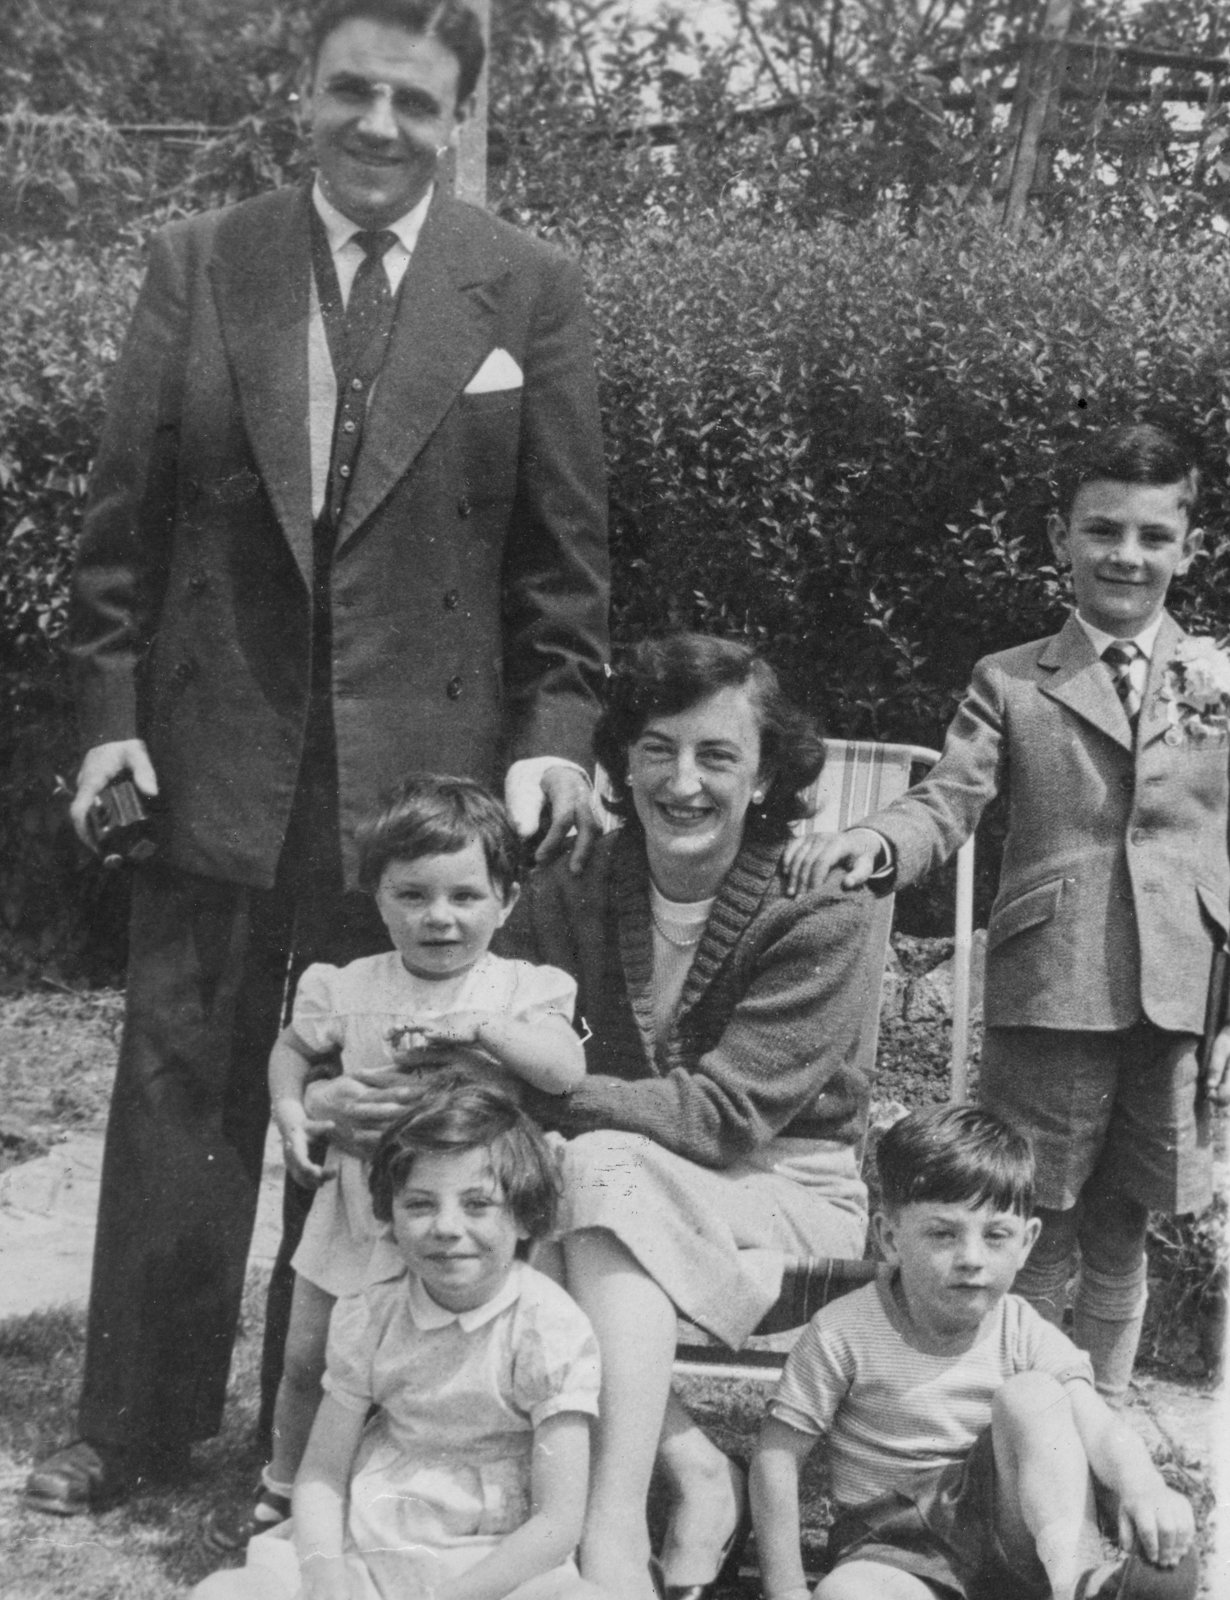 The Smith family in Birmingham c. 1957